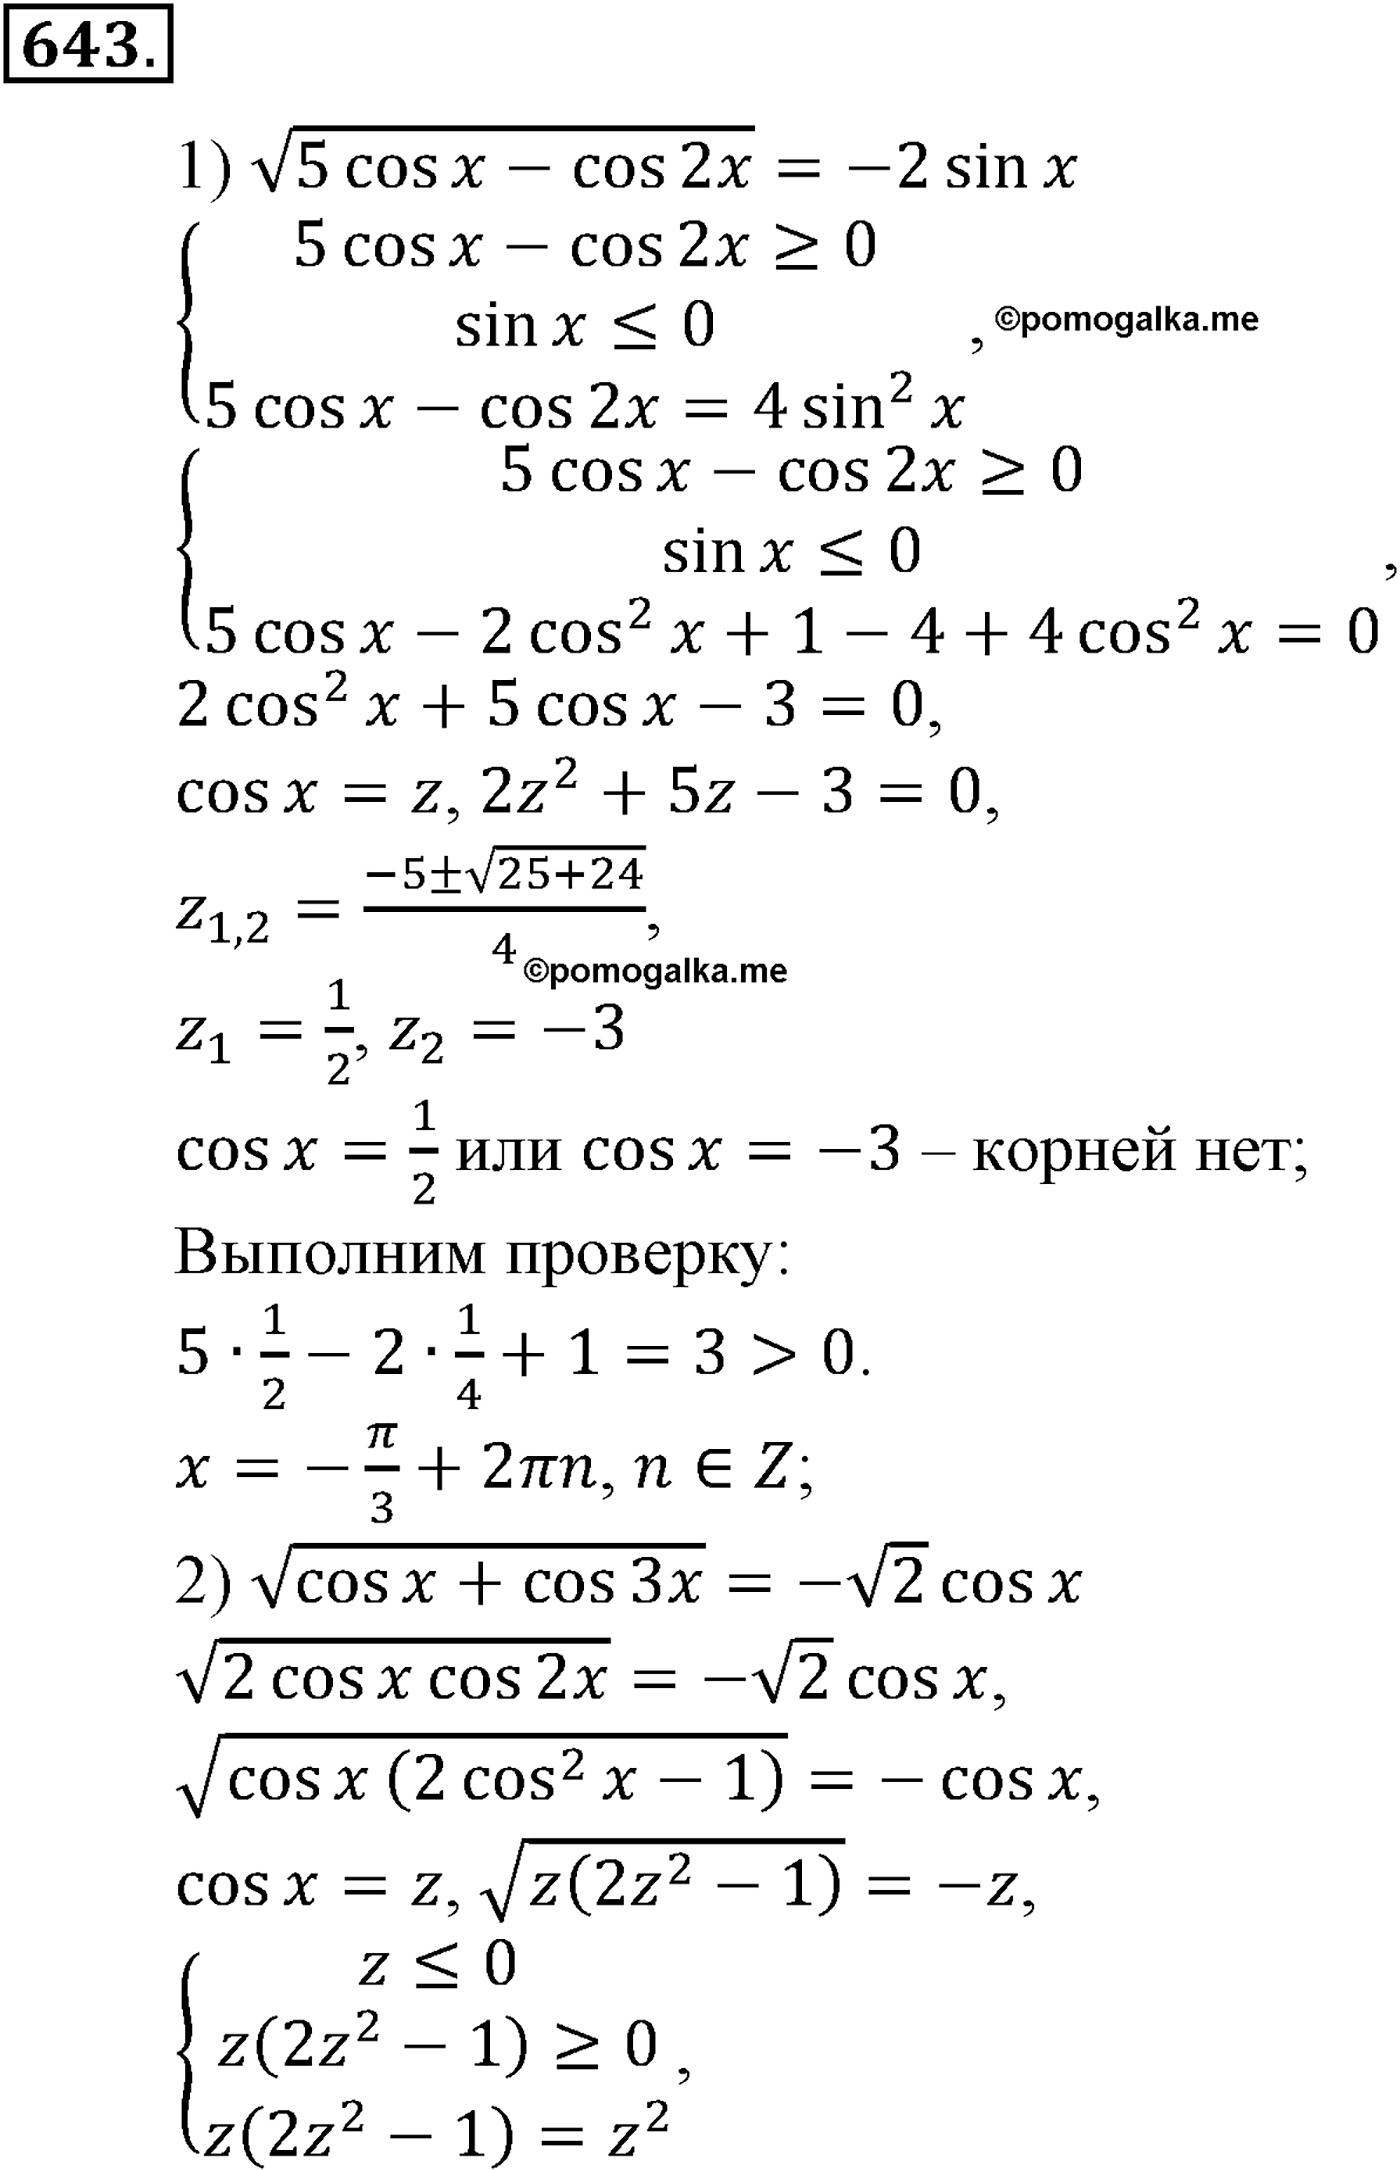 разбор задачи №643 по алгебре за 10-11 класс из учебника Алимова, Колягина